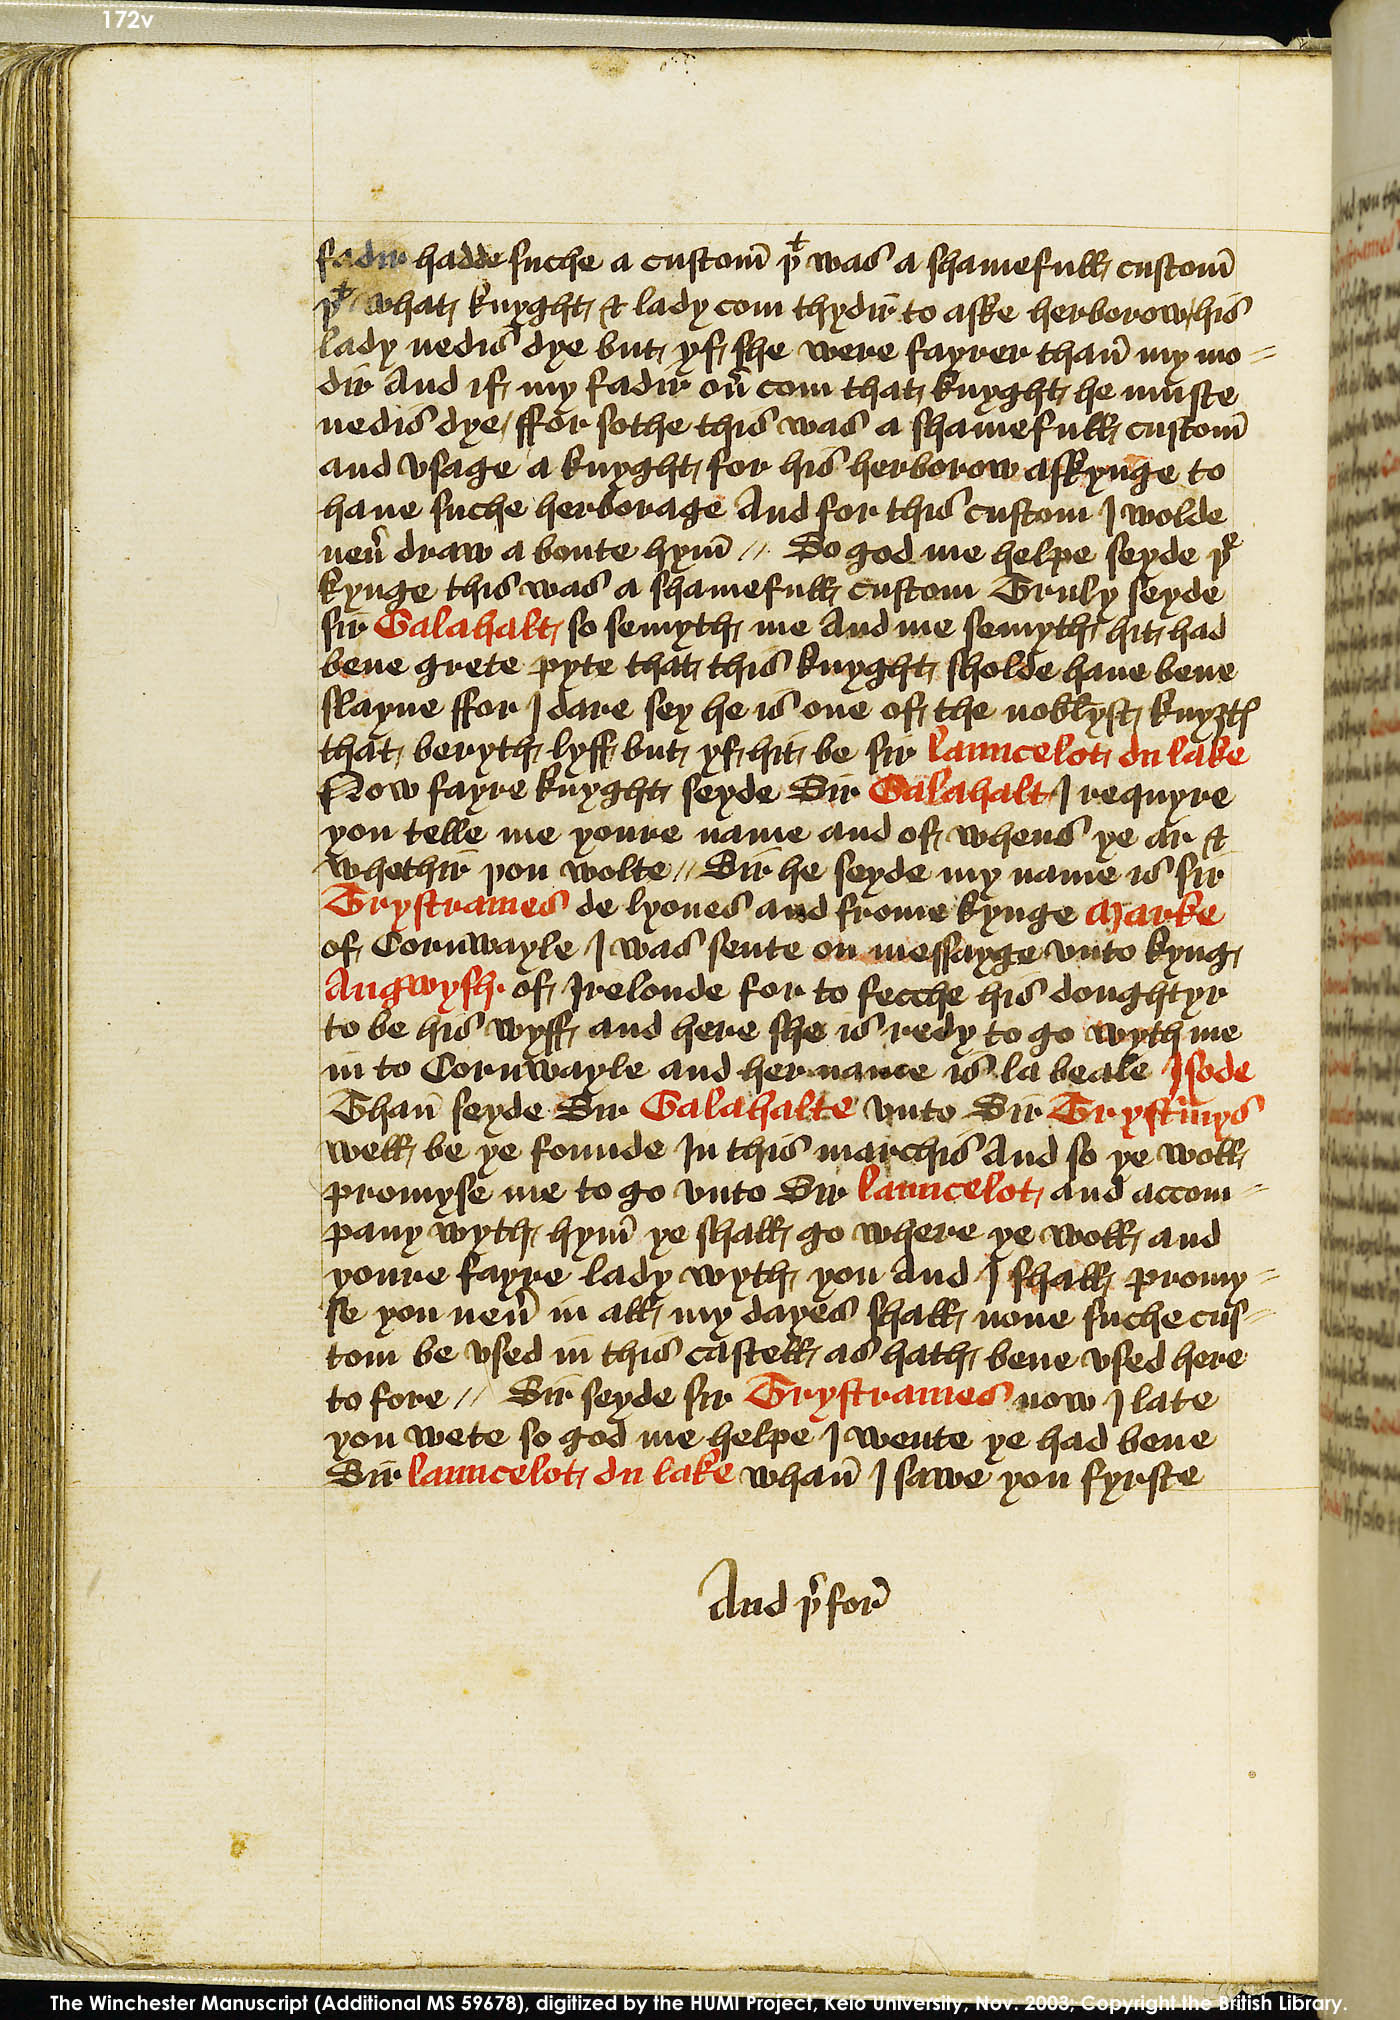 Folio 172v